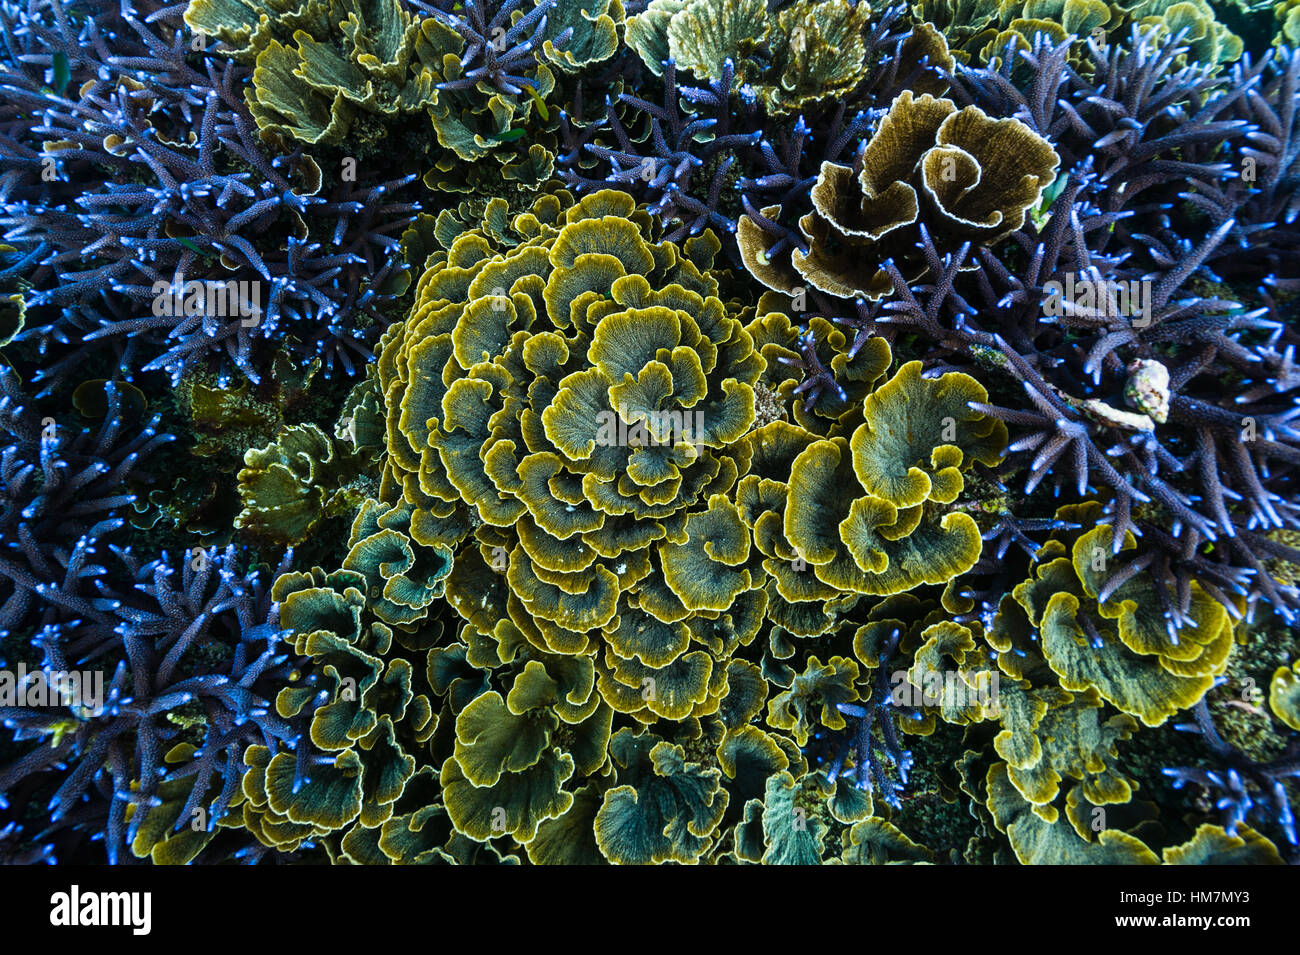 Regardant vers le bas sur une colonie de coraux vase vert violet entouré de récifs Staghorn. Banque D'Images